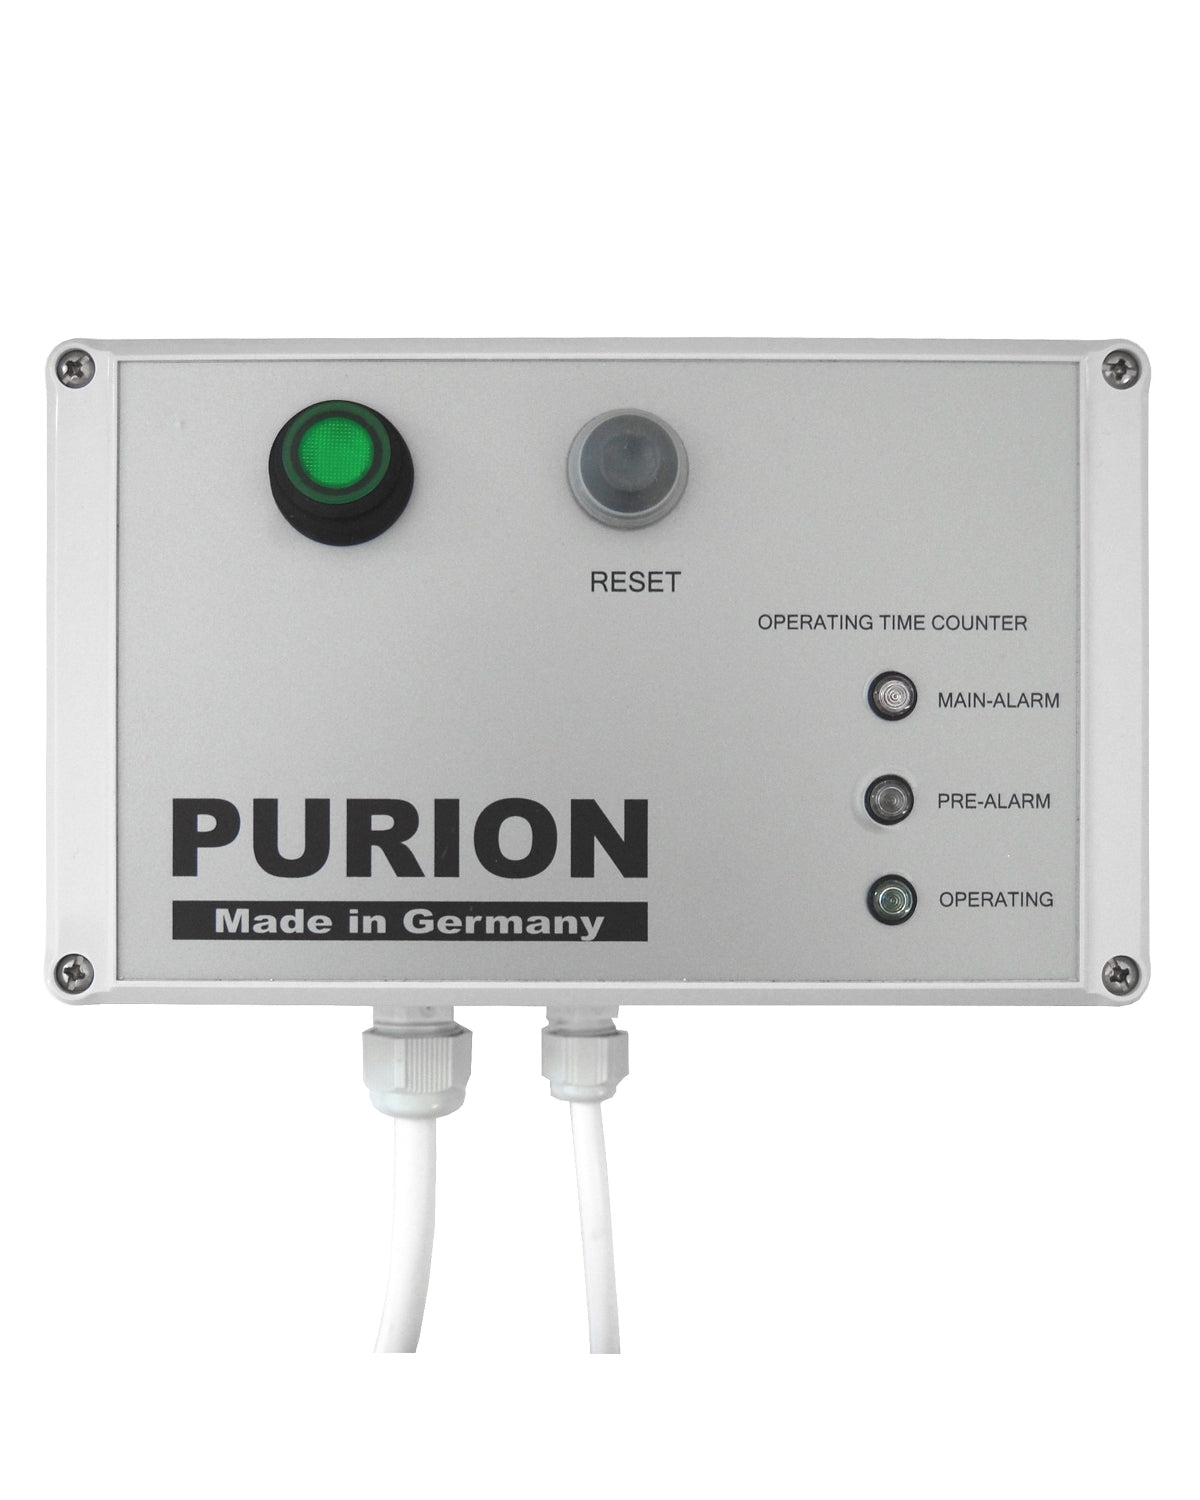 Der AIRPURION 300 Active Silent Plus ist ein hochmoderner Luftreiniger der PURION GmbH, der effiziente Luftentkeimung und leistungsstarke Desinfektionsleistung vereint. Mit seiner überlegenen Technologie eliminiert es.